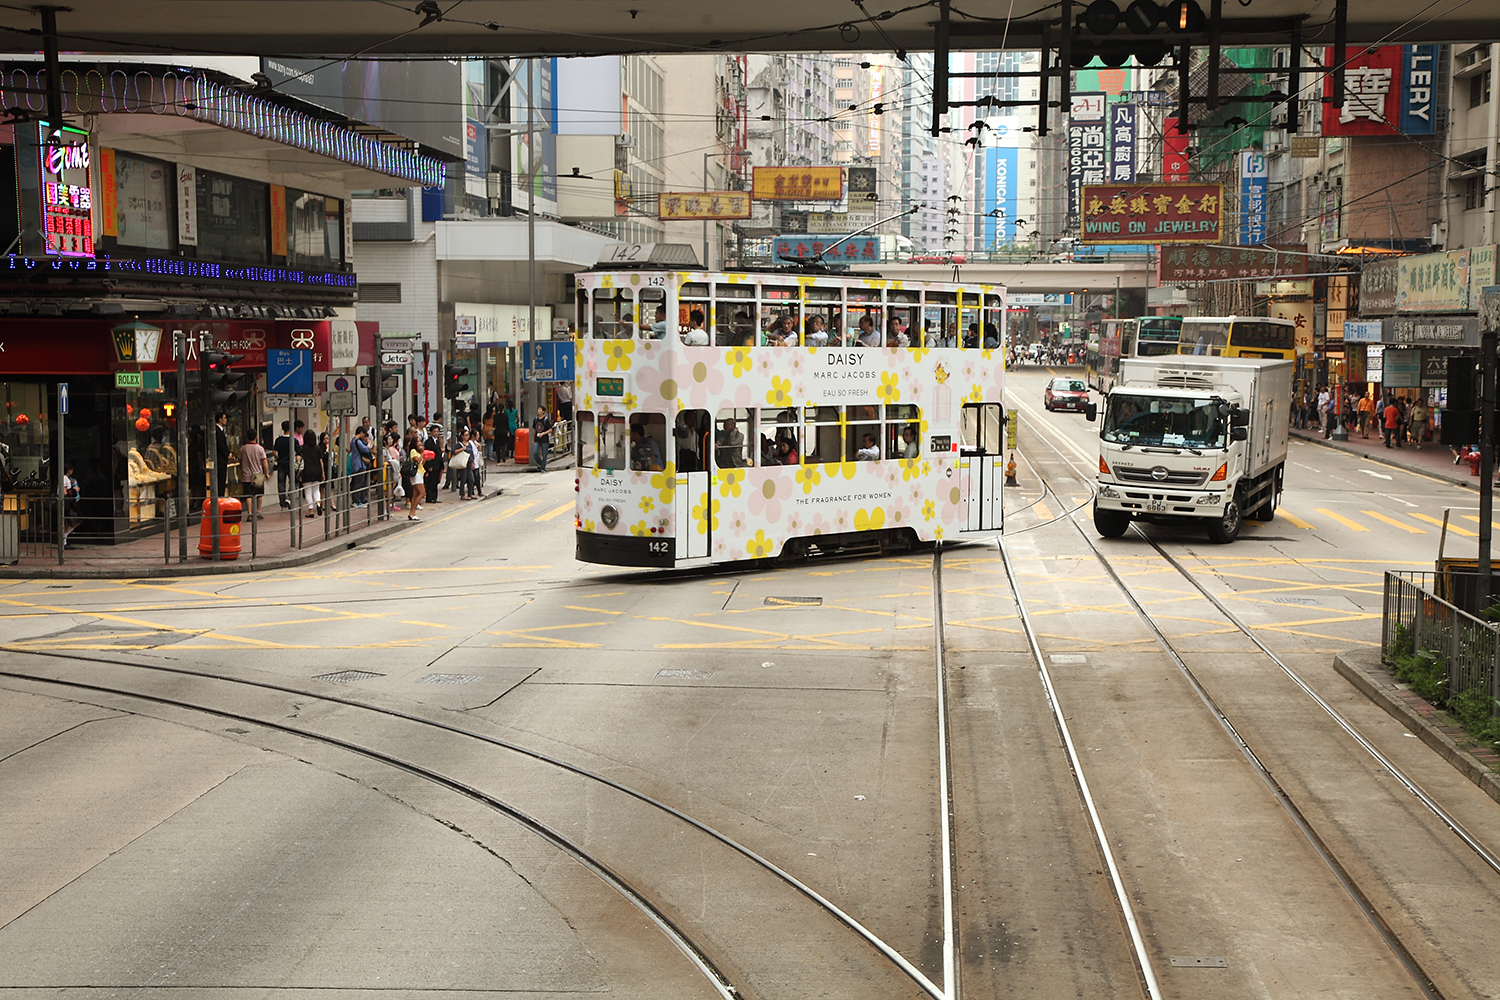 Hong Kong tramway photos mona awad